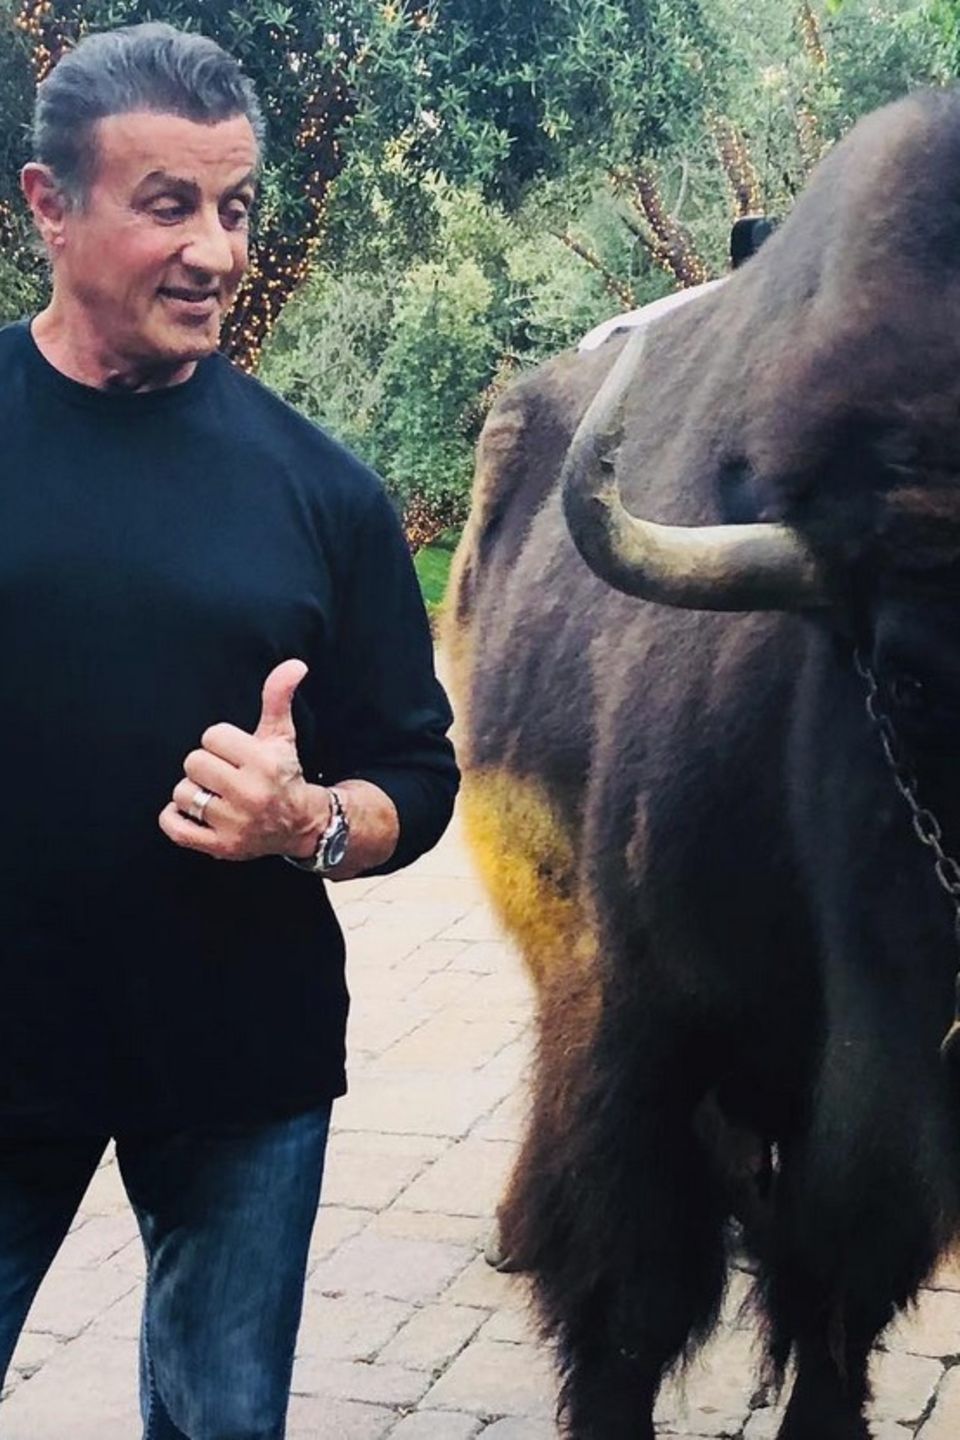 Sylvester Stallone scherzt zu diesem lustigen Schnappschuss auf Instagram, dass er "einen sehr großen Hund adoptiert hat, den er Buffalo Wings nennen will". 